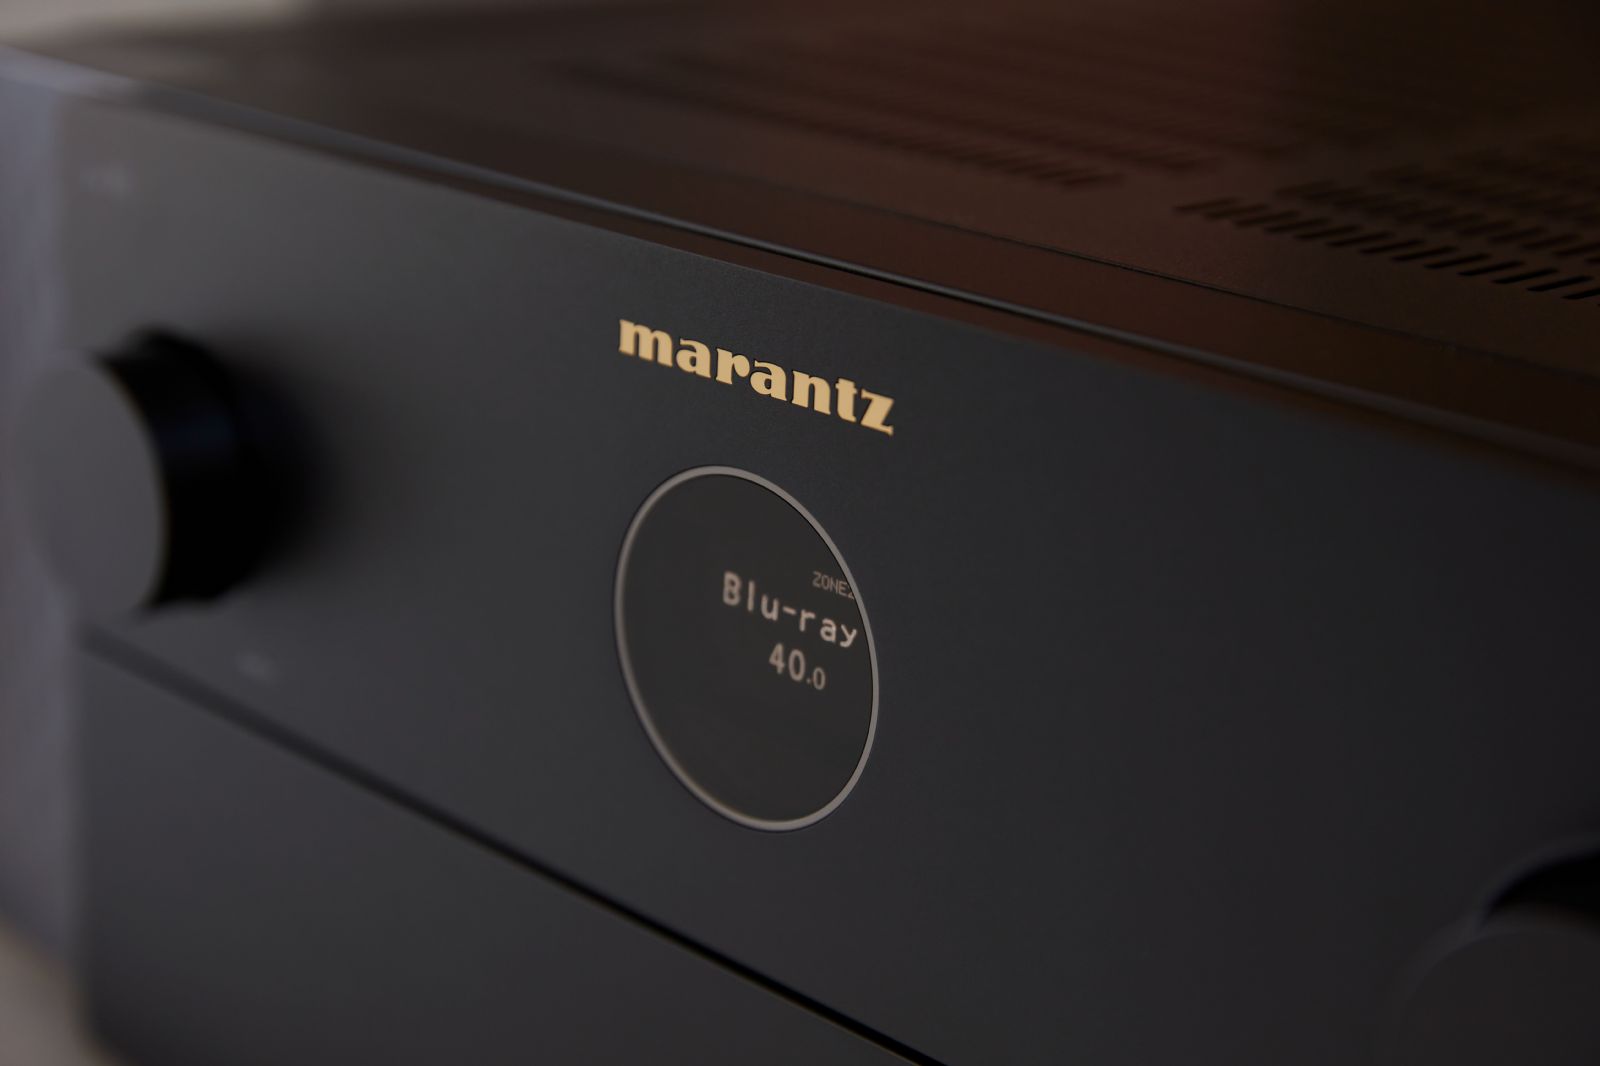 Marantz Cinema 40 9.4-kanals A/V-receiver